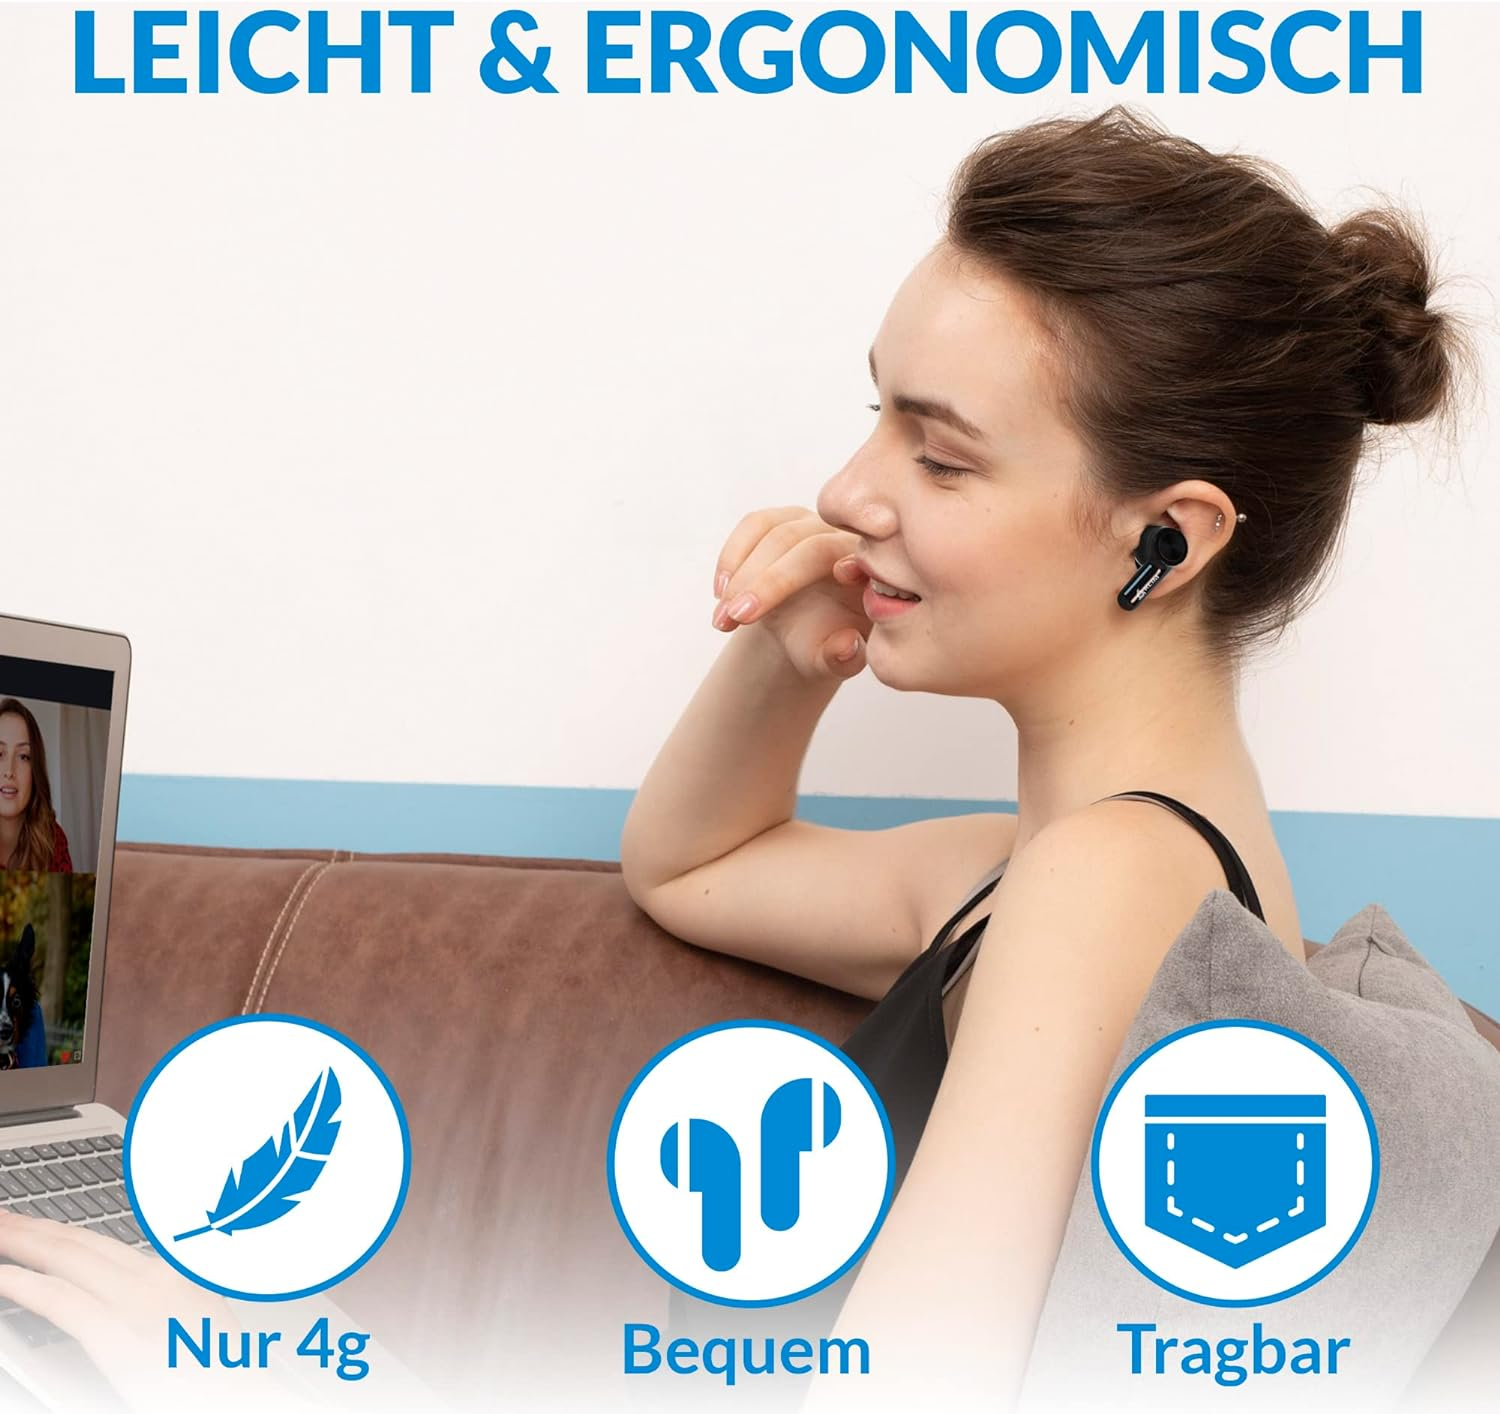 Bluetooth In-ear True Schwarz Wireless KLIM Kopfhörer Bluetooth Pods, In-ear